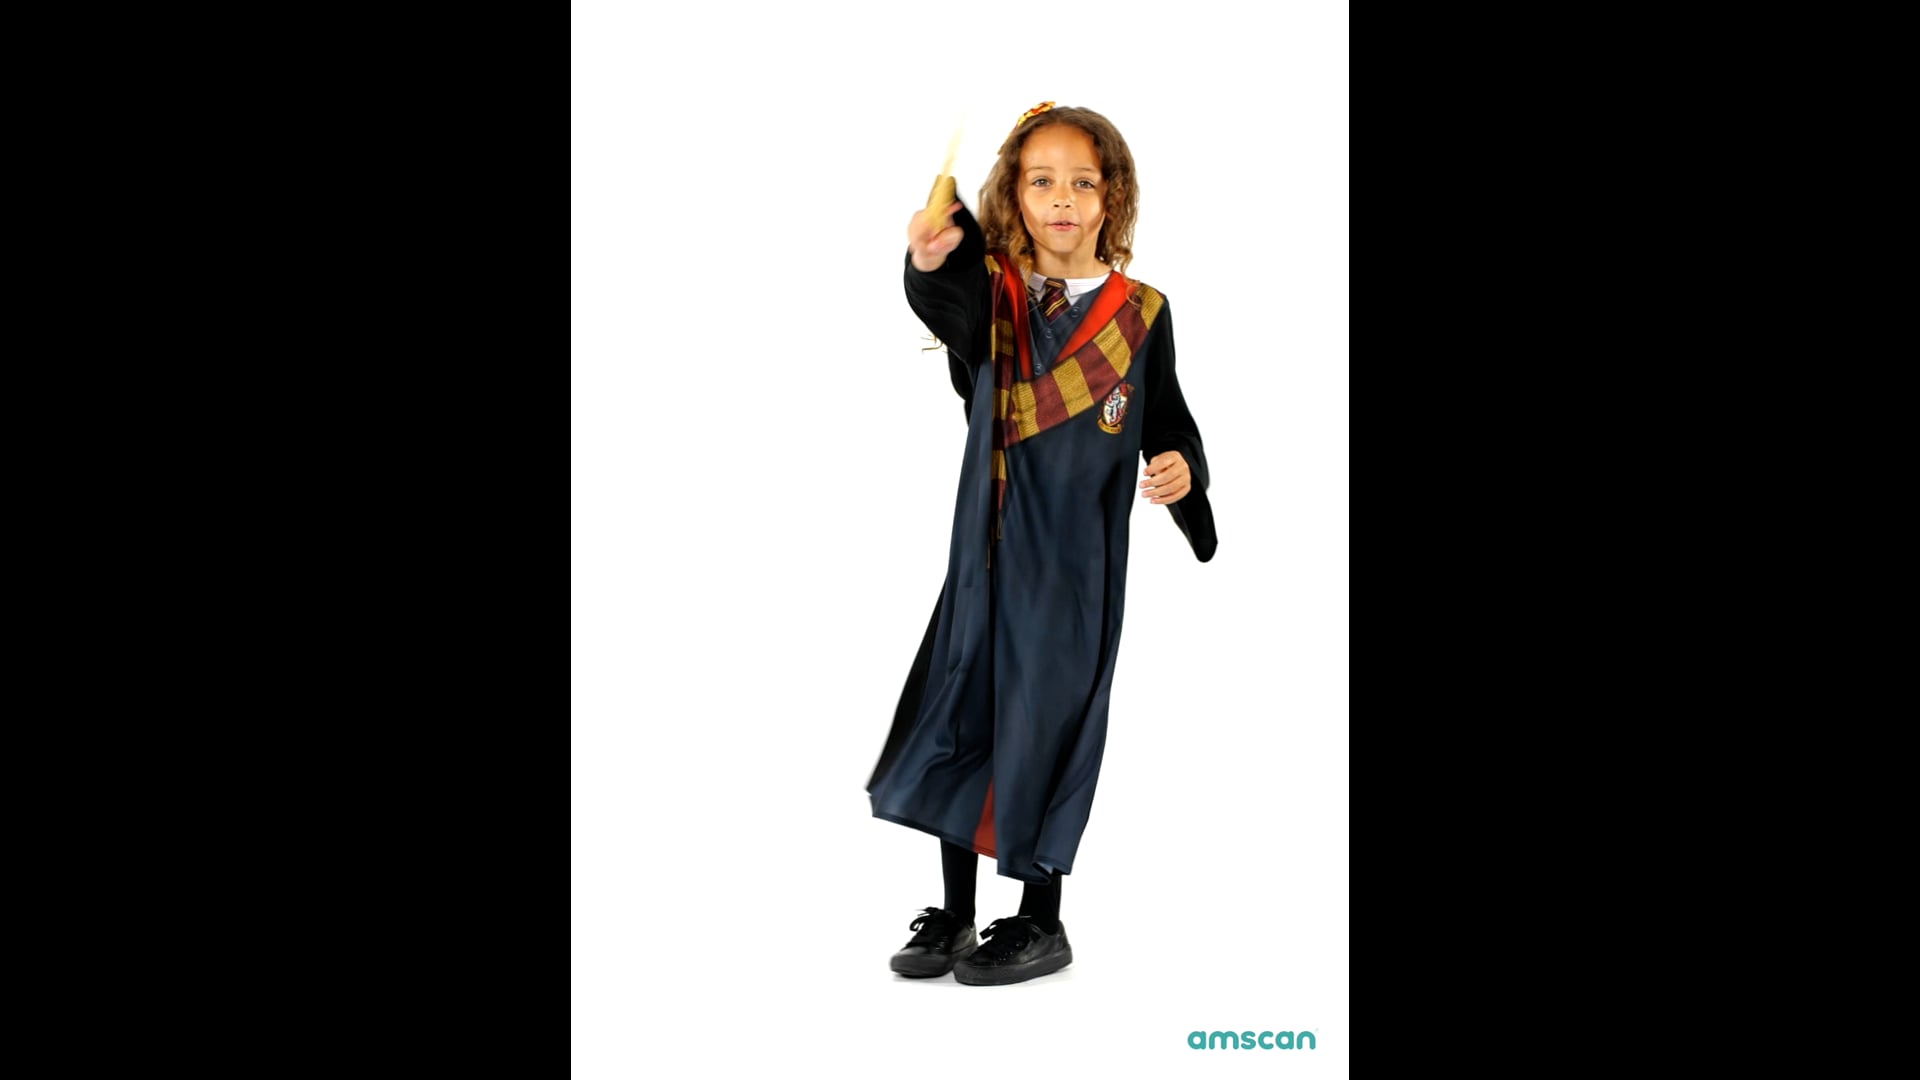 Costume Harry Potter haut de gamme pour enfants, robe à capuche et  combinaison, taille S (4-6)